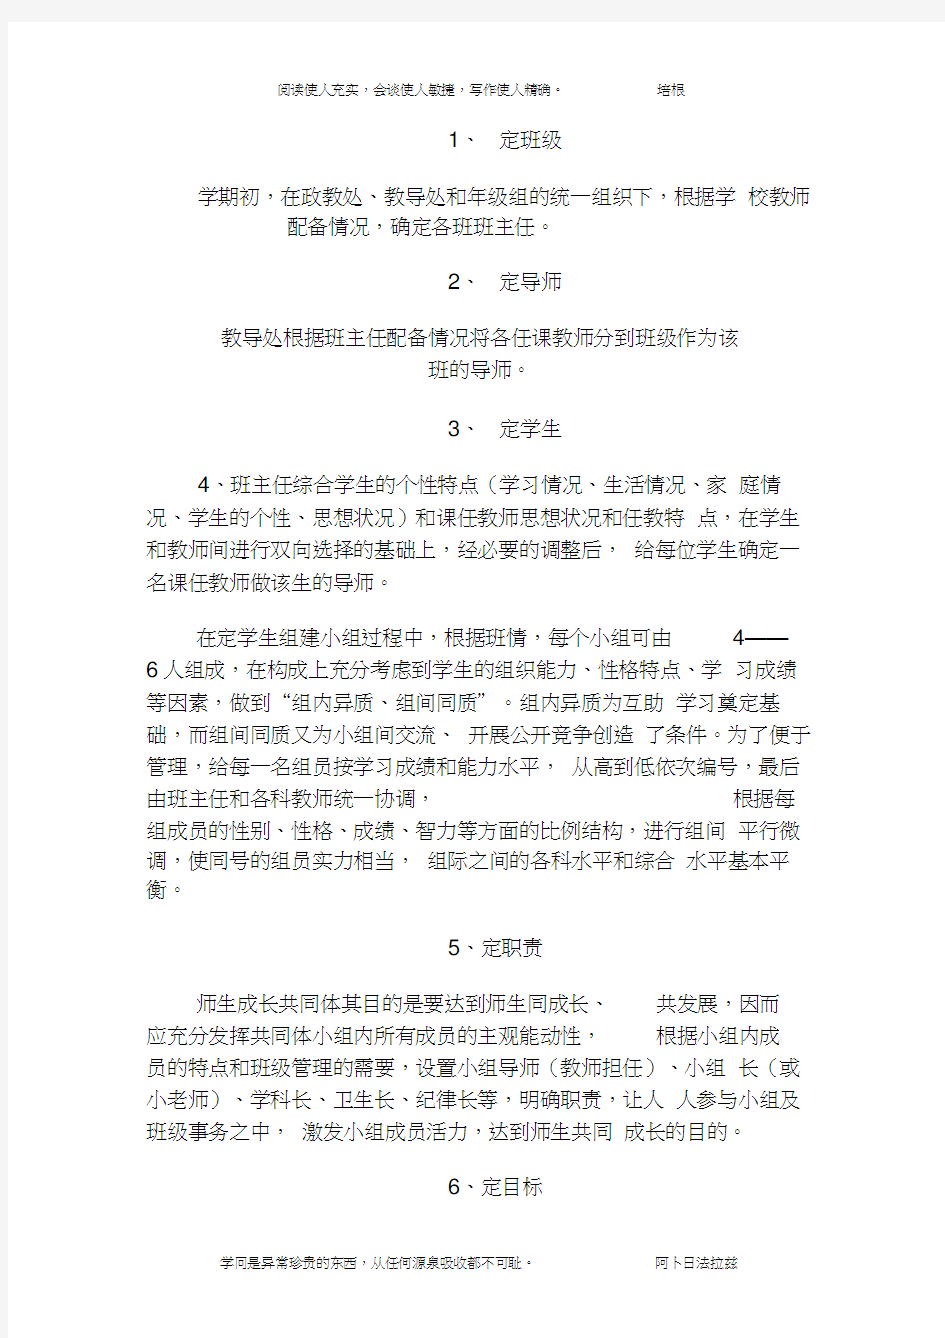 佘家湾师生成长共同体建设的奖惩制度和方案(1)